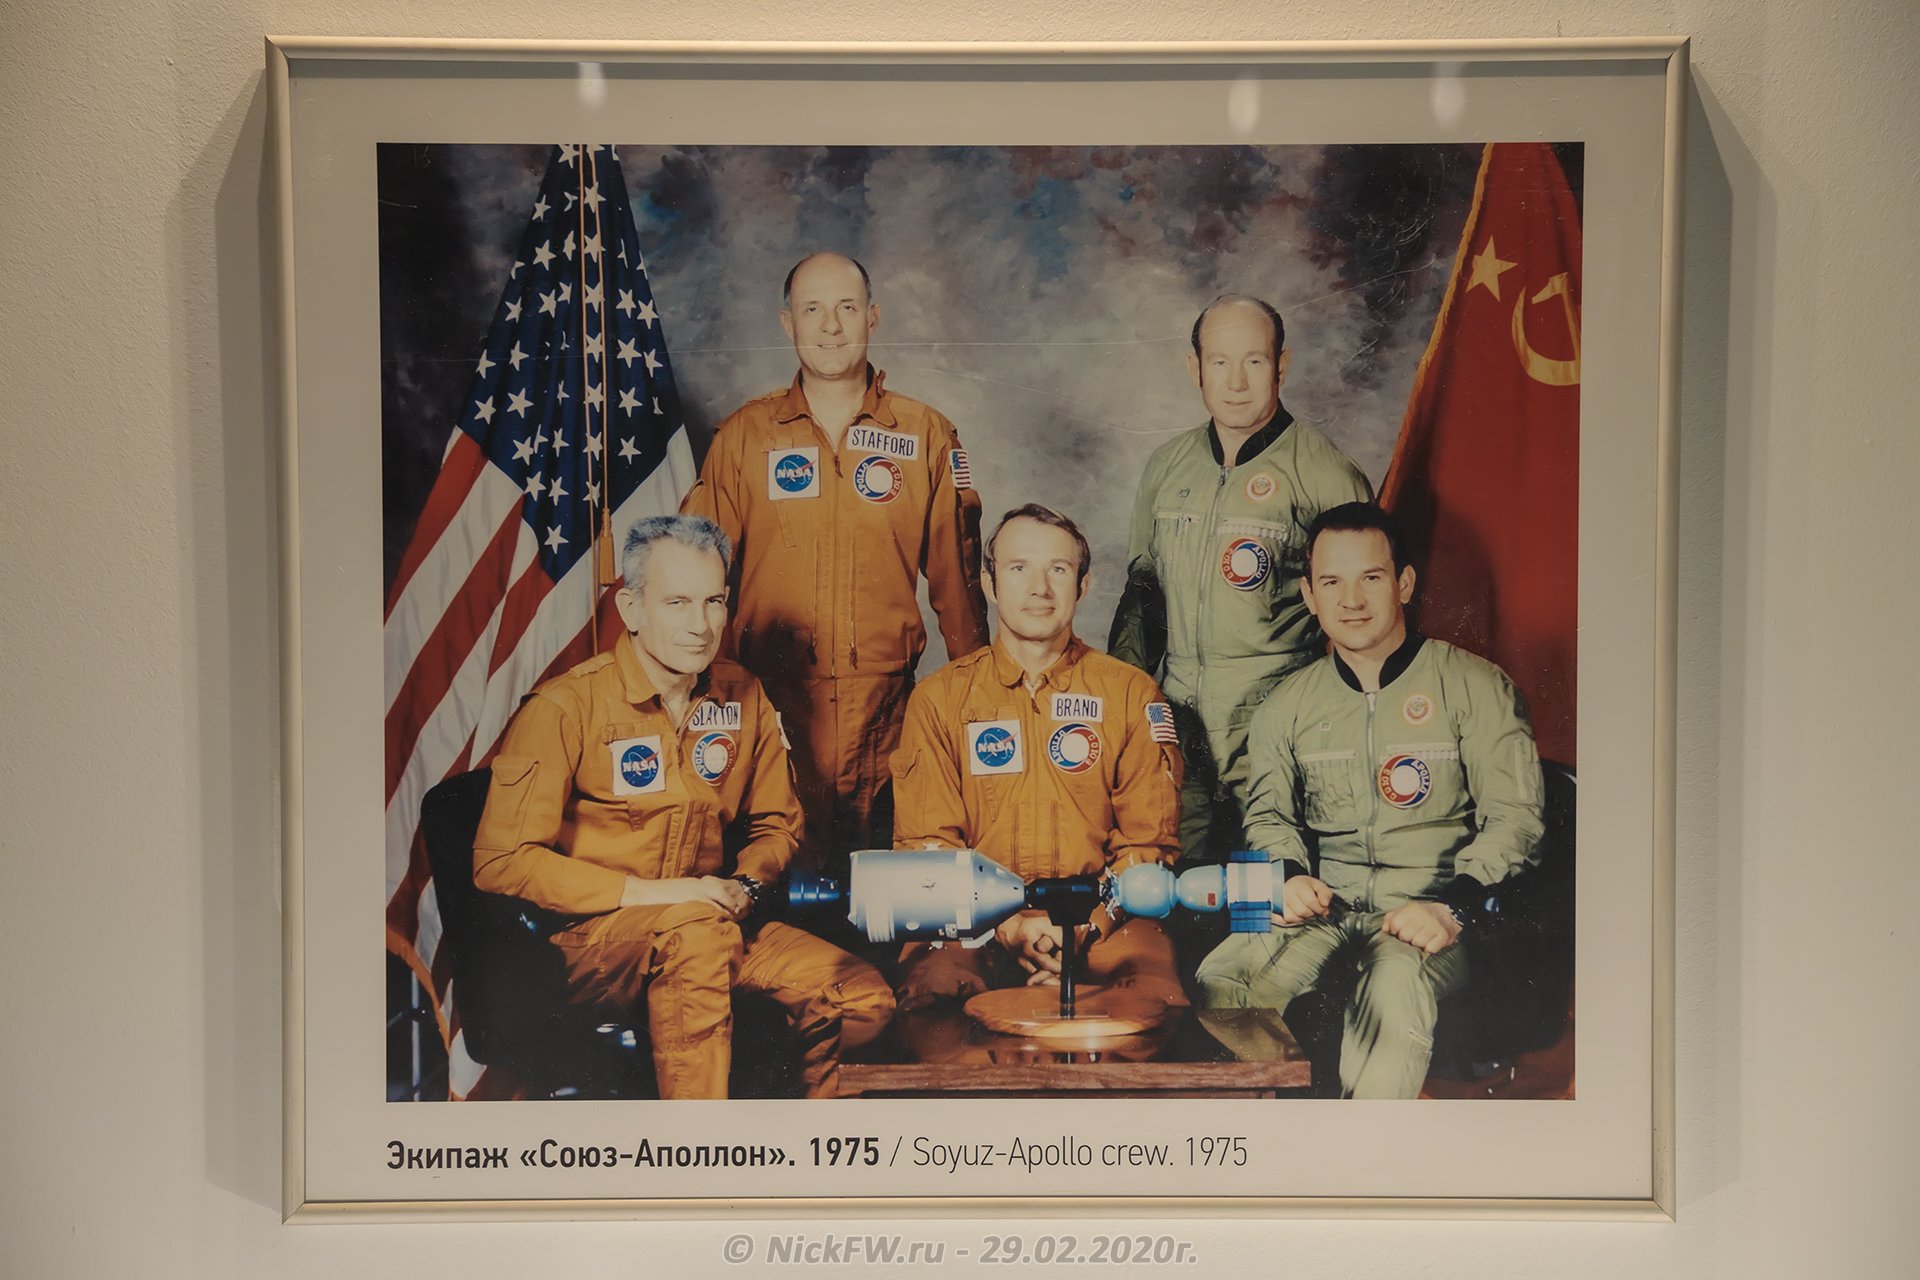 Союз аполлон в каком году. Экипаж Союз-Аполлон 1975. Экспериментальный полет Союз Аполлон 1975. Союз-Аполлон космос советско-американский полет.